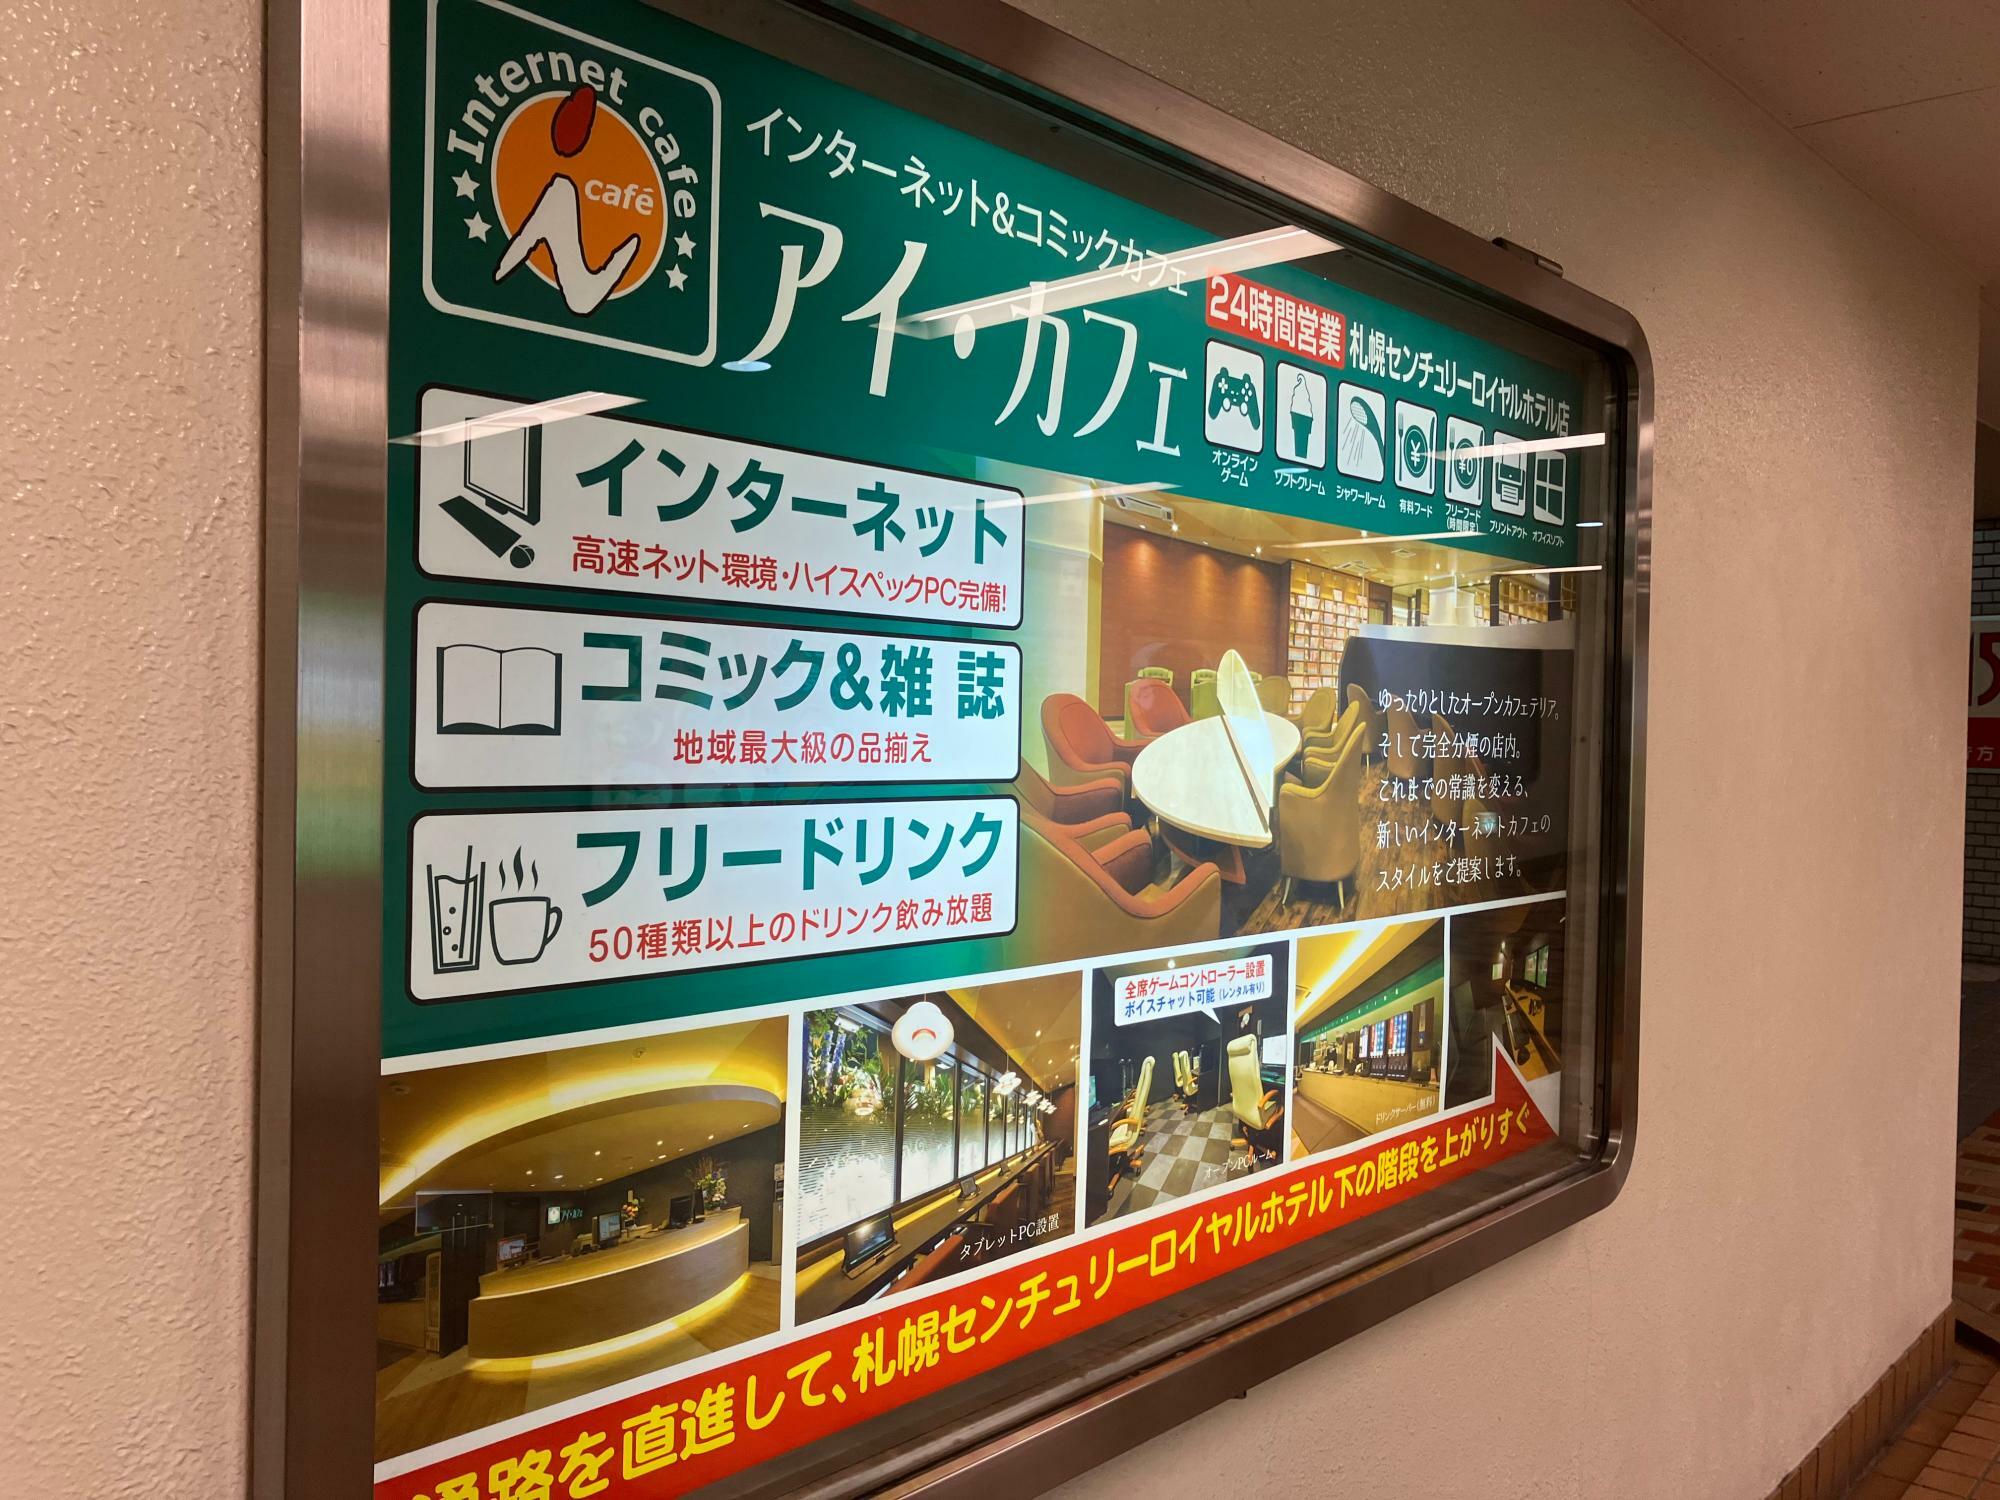 センチュリーロイヤル地下通路に掲示されていたアイカフェの電光掲示板